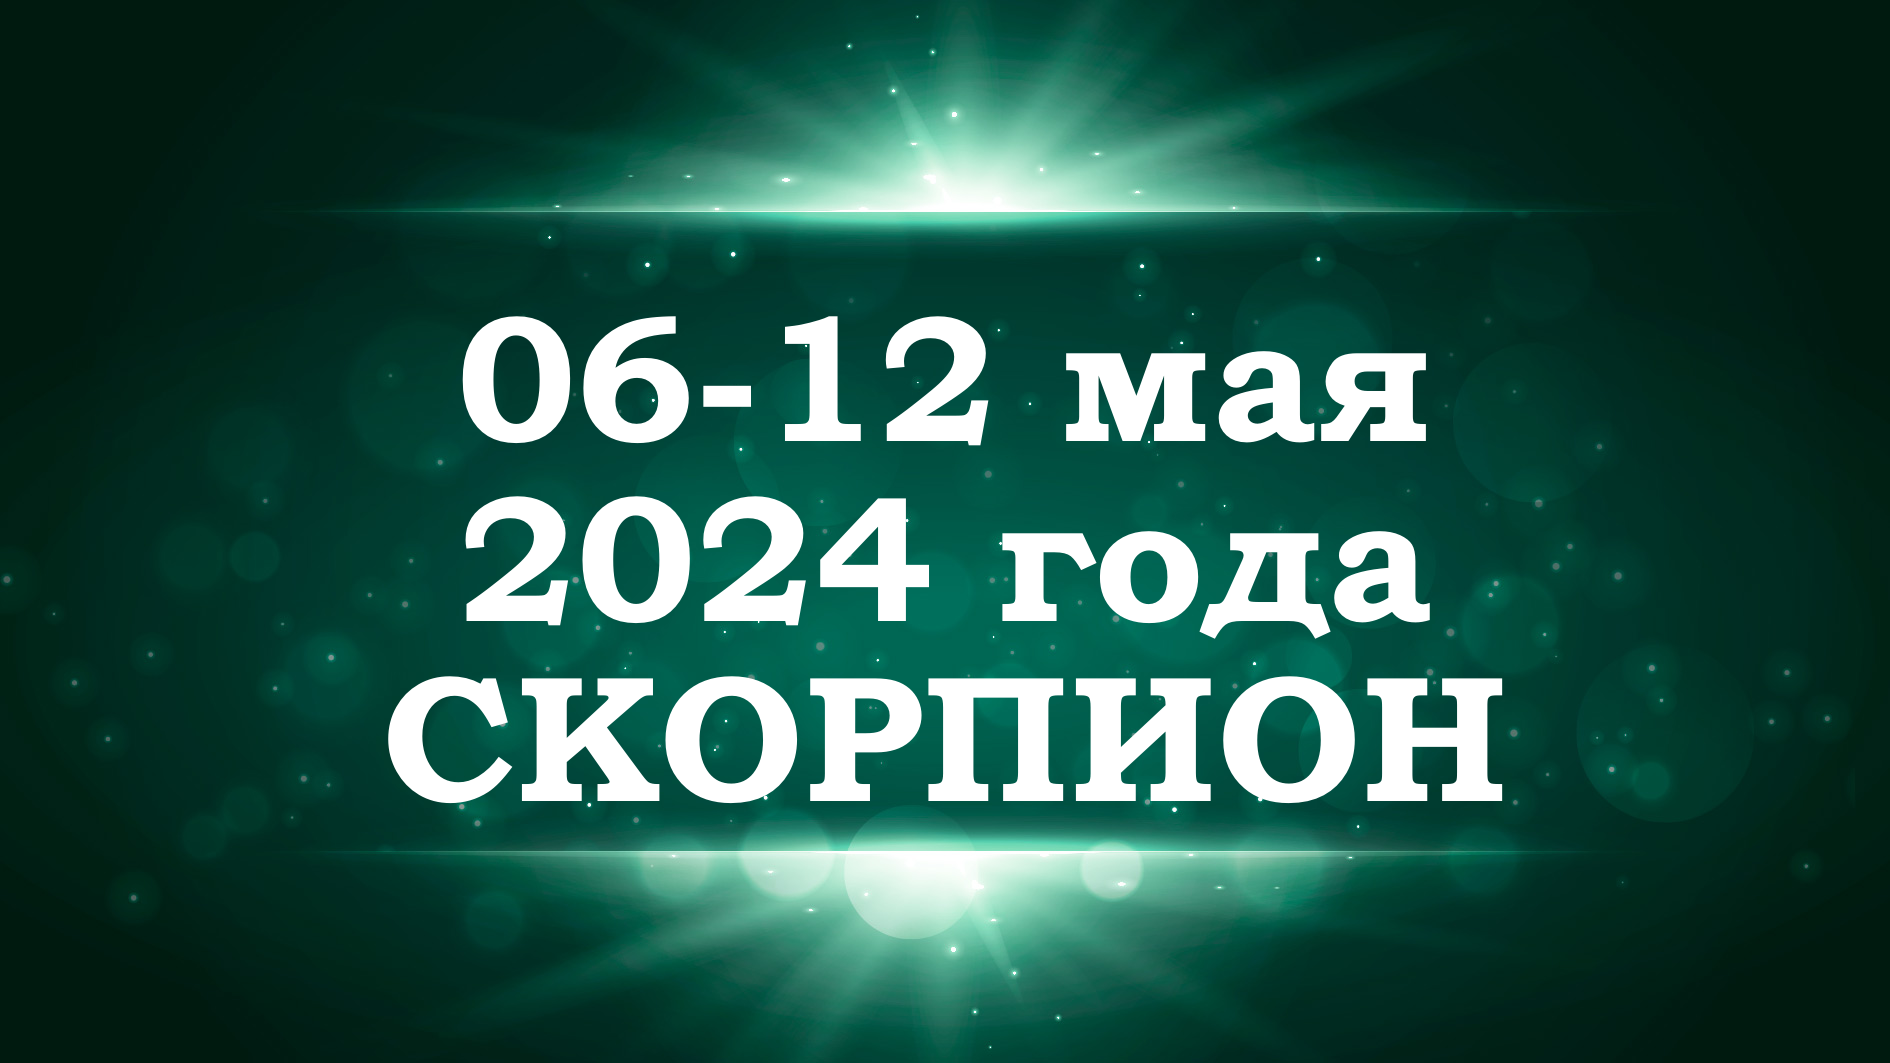 СКОРПИОН | ТАРО прогноз на неделю с 6 по 12 мая 2024 года